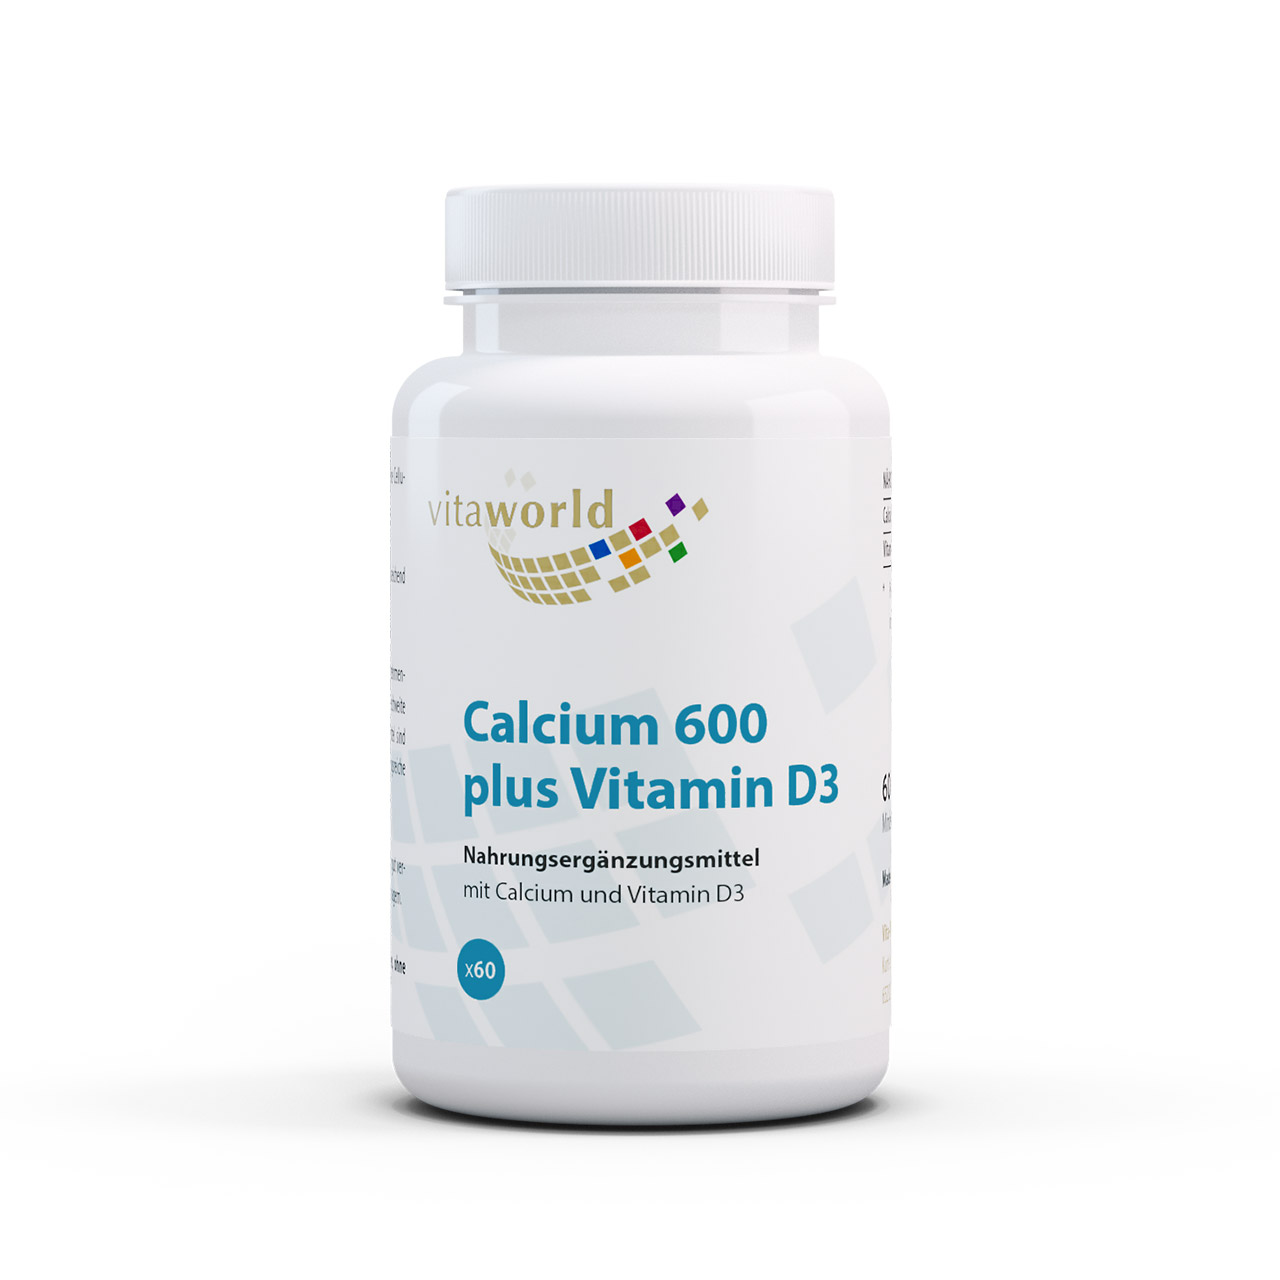 Vitaworld Calcium 600 + Vitamin D3 | 60 Tabletten | gluten- und laktosefrei